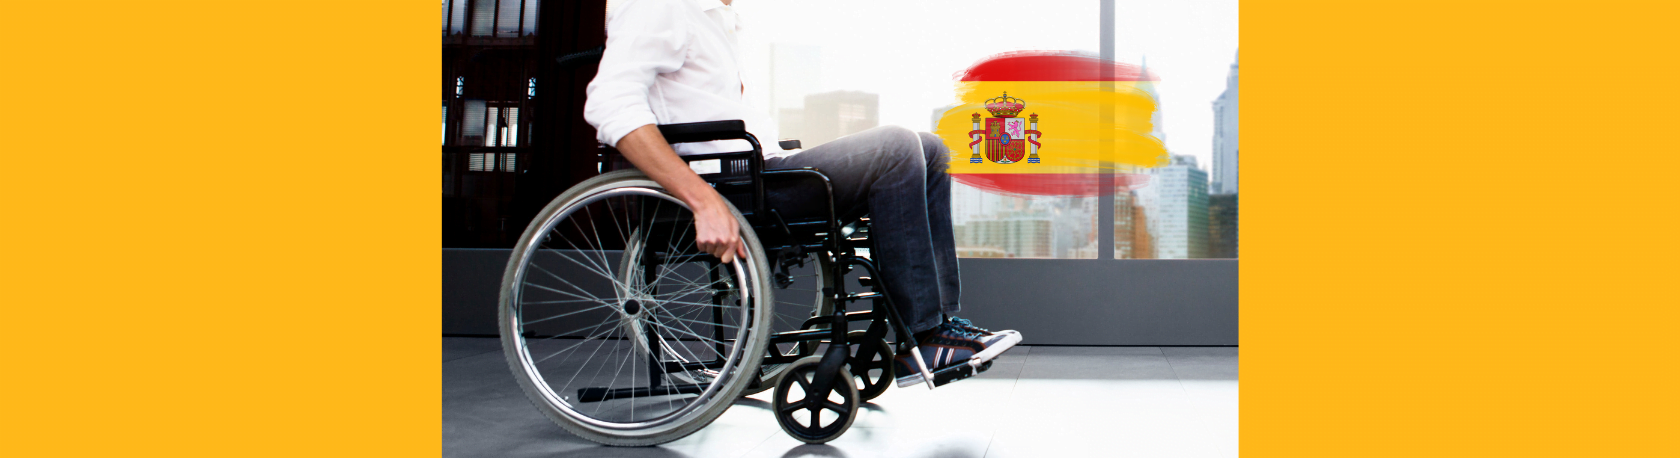 ¿Sabías que la silla de ruedas fue un invento español? - Easy Español